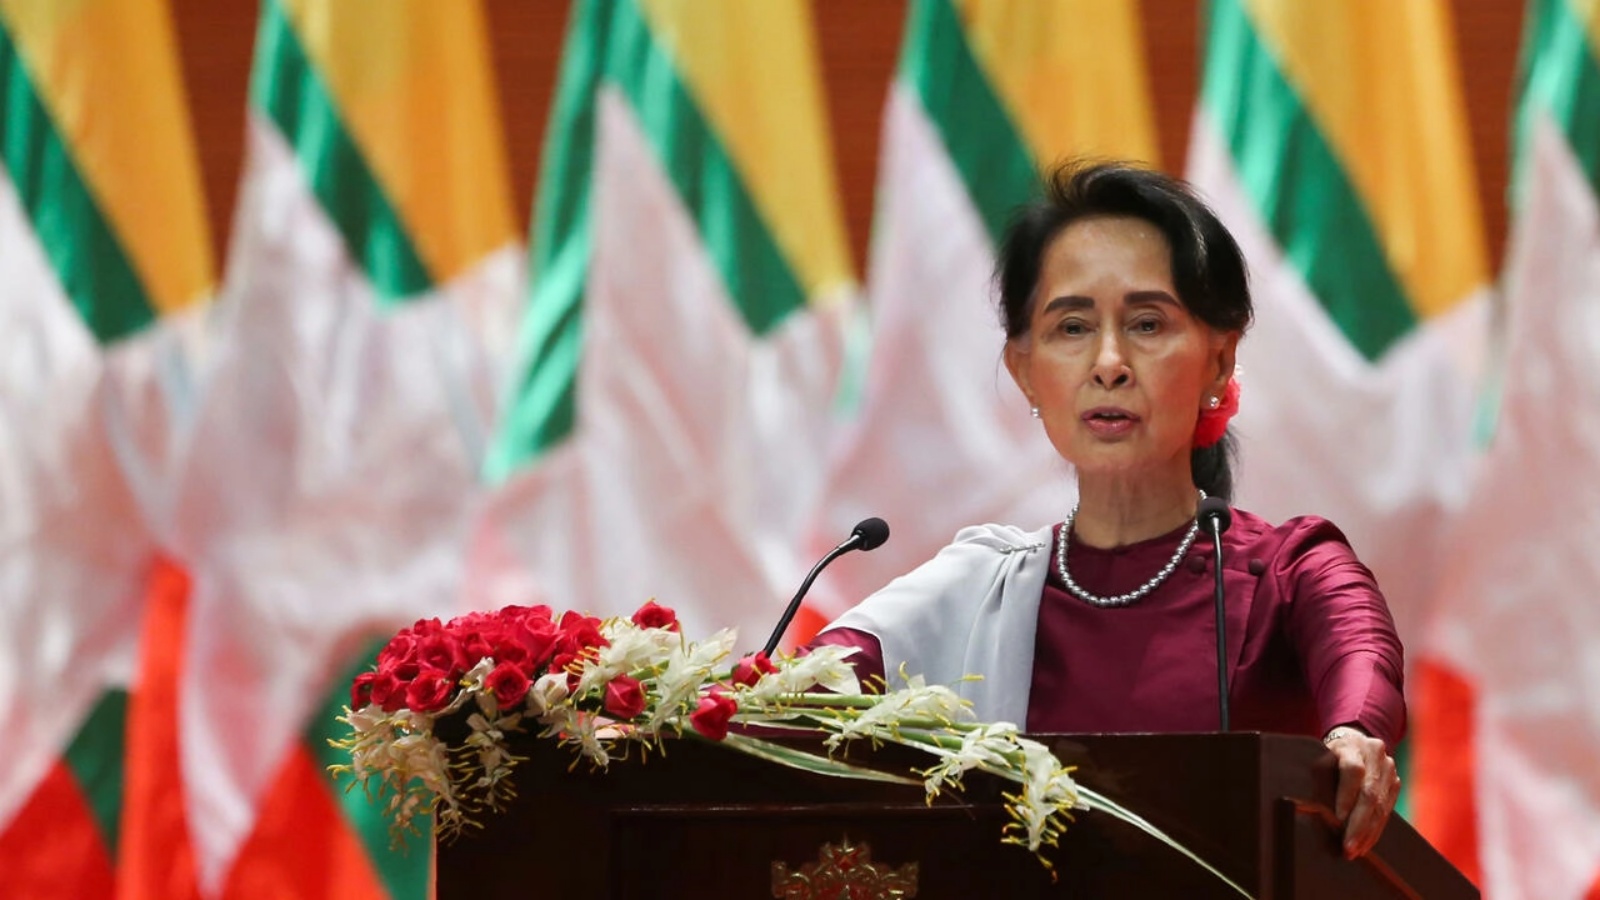 الزعيمة البورمية المدنية المخلوعة أونغ سان سو تشي